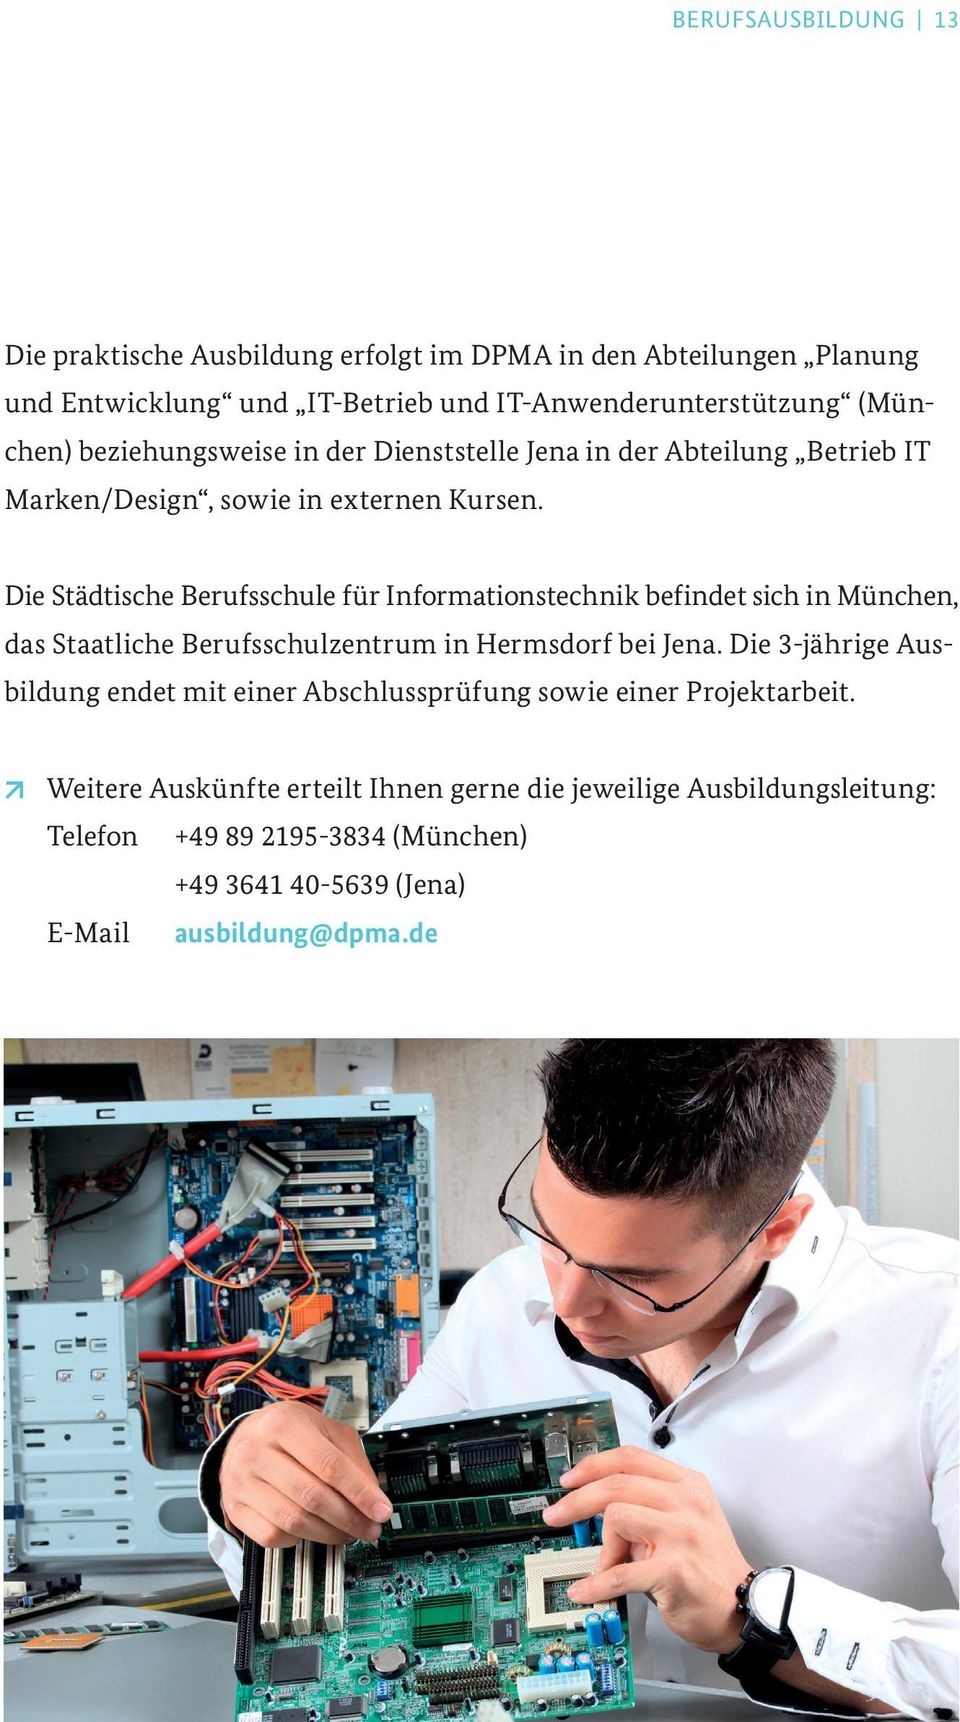 Die Städtische Berufsschule für Informationstechnik befindet sich in München, das Staatliche Berufsschulzentrum in Hermsdorf bei Jena.